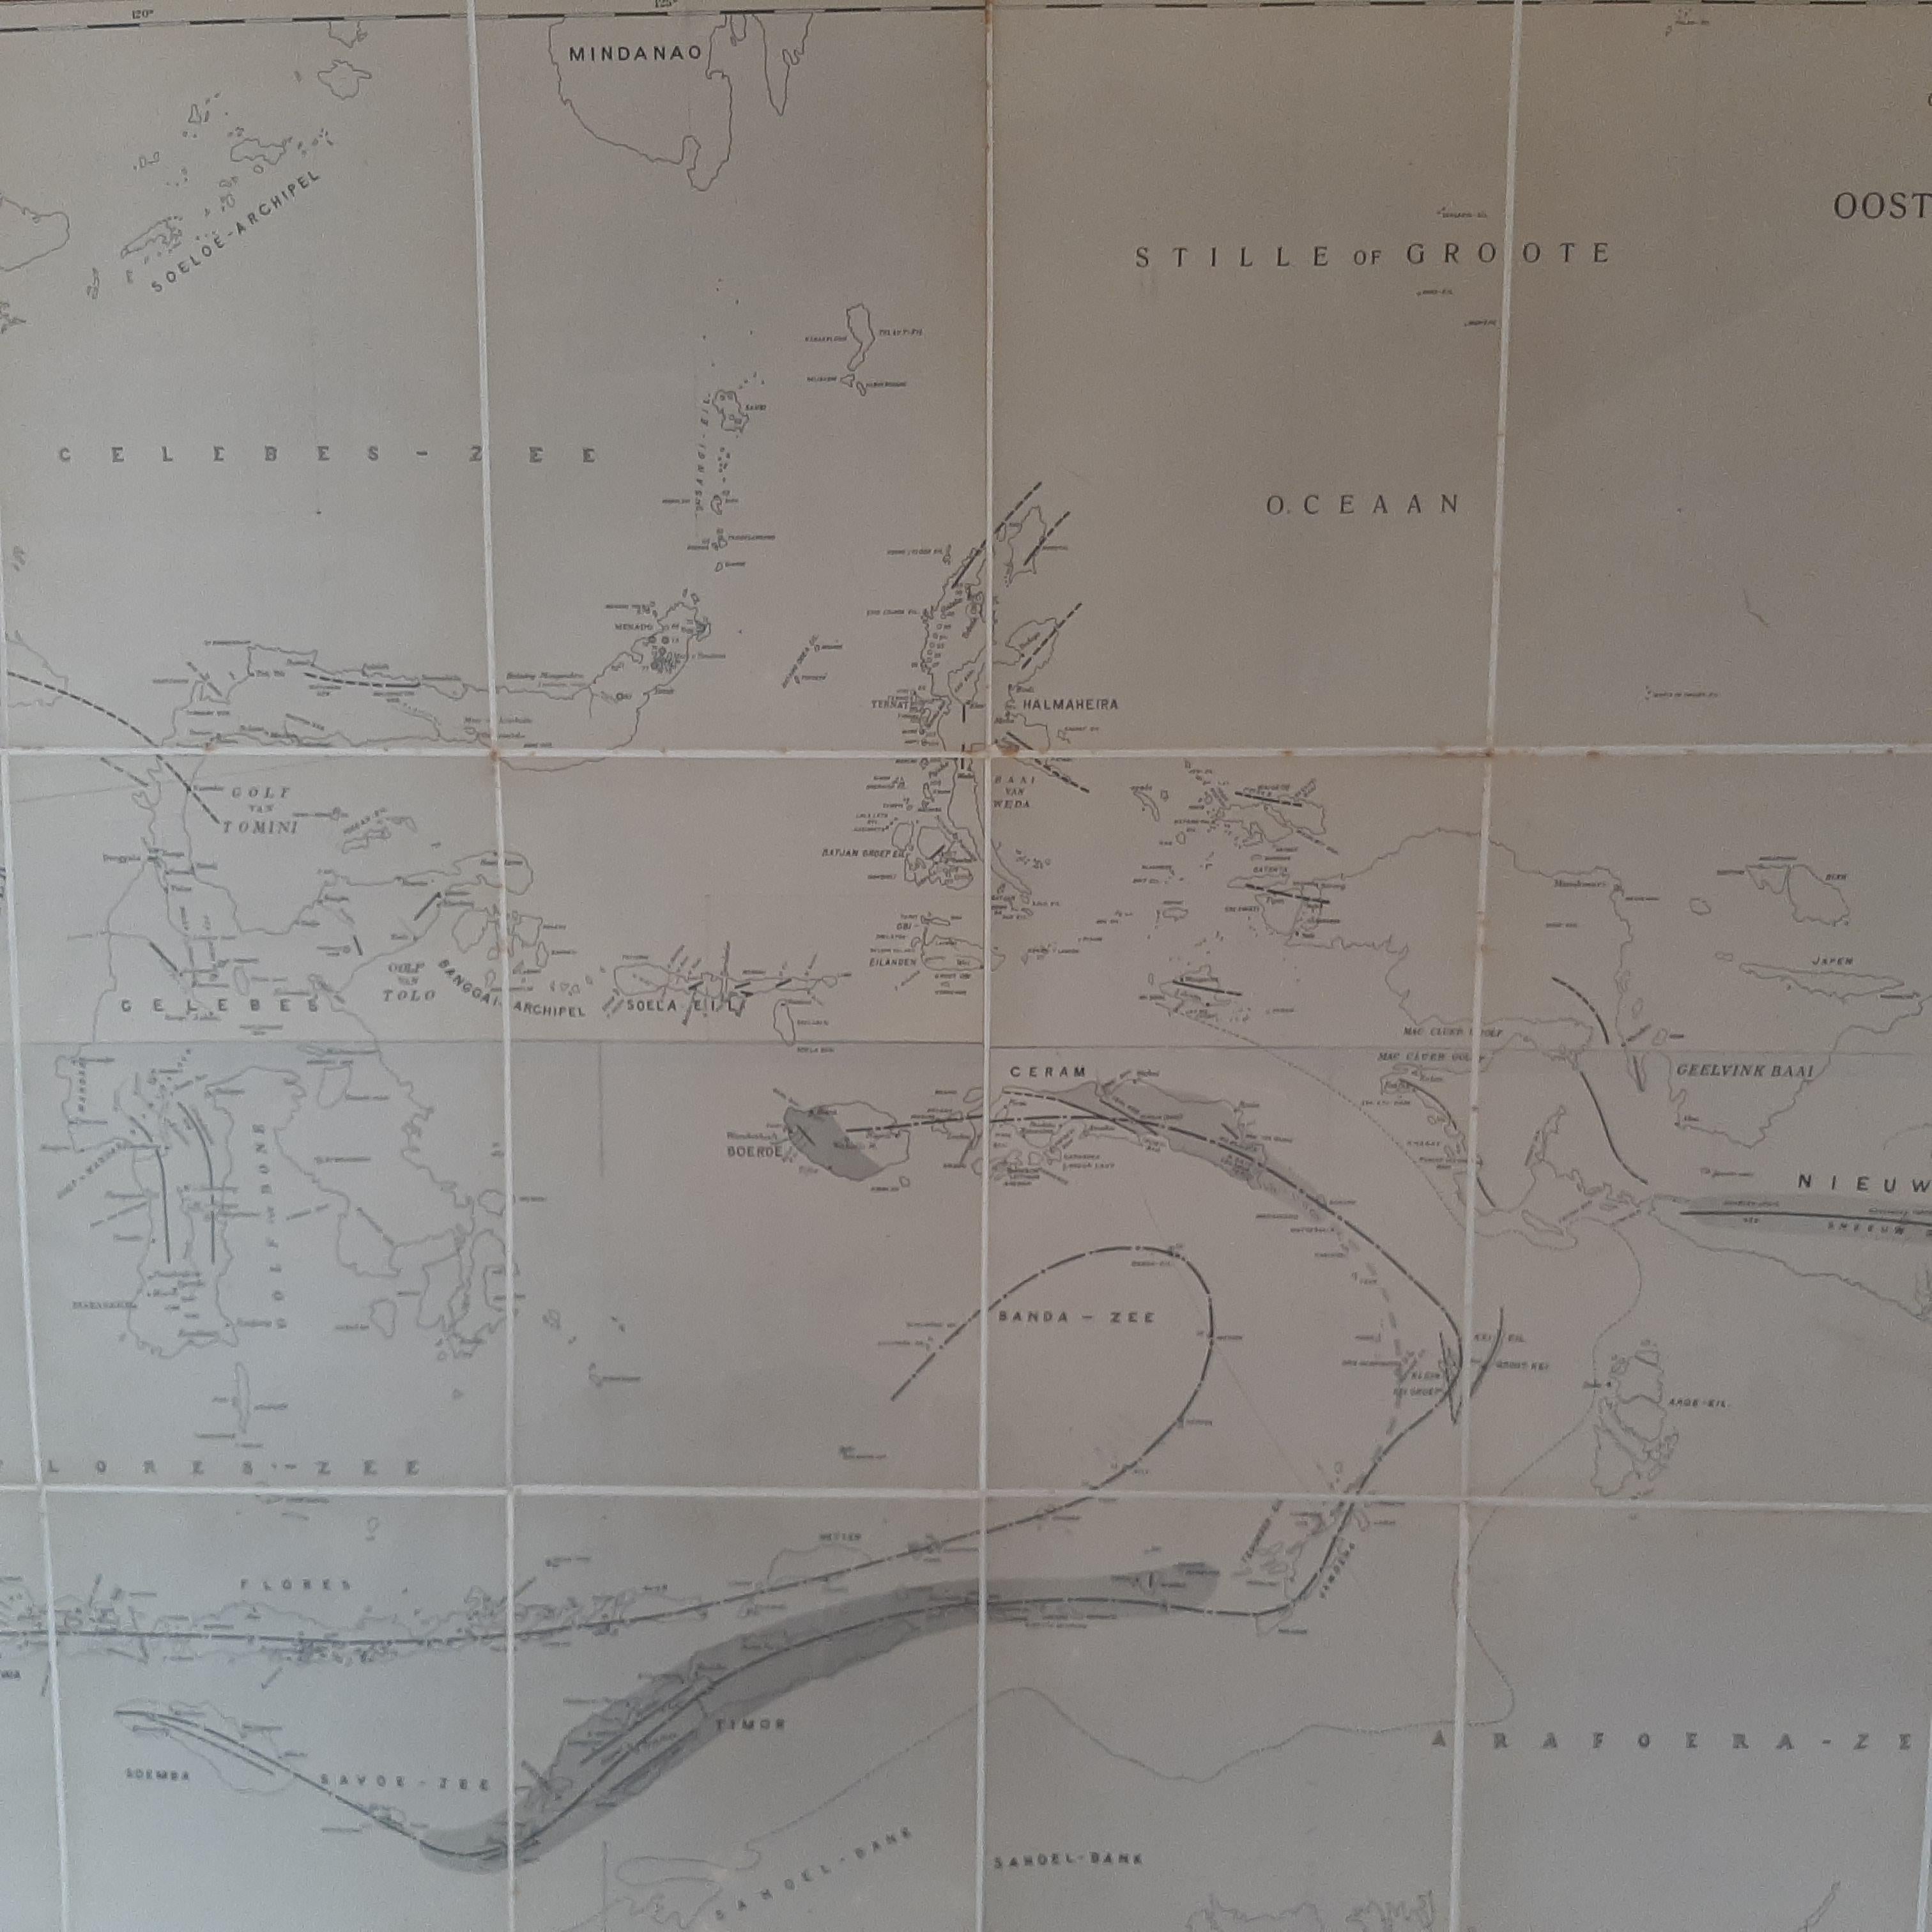 Antique map titled 'Geotektonische Schetskaart van het Oostelijk Gedeelte van den Oost-Indischen Archipel':

**Title**: Geotektonische Schetskaart van het Oostelijk Gedeelte van den Oost-Indischen Archipel
**Author**: H.A. Brouwer
**Source**: